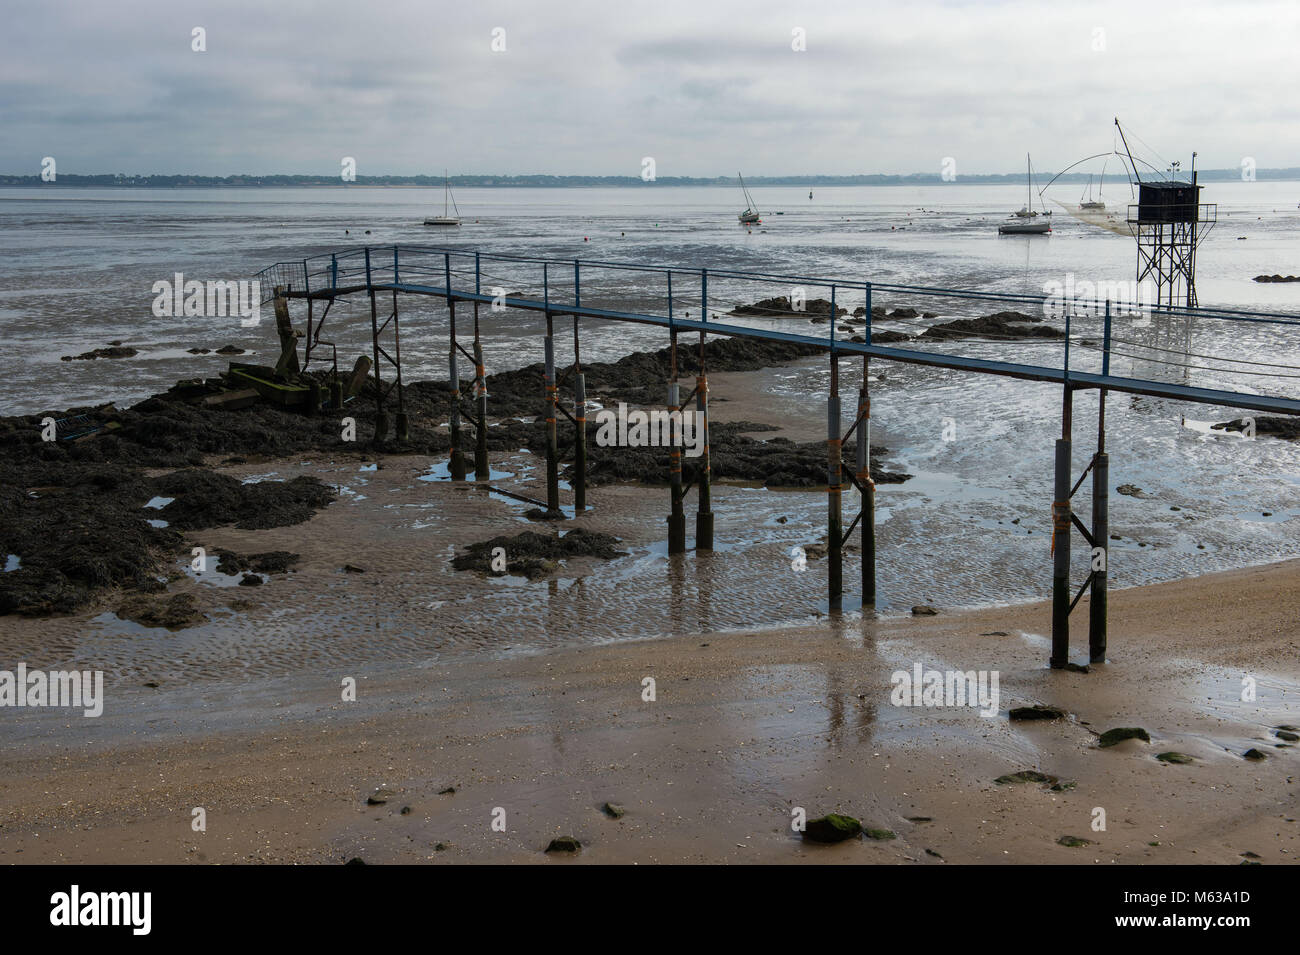 Saint Nazaire, la plage à marée basse. France Banque D'Images